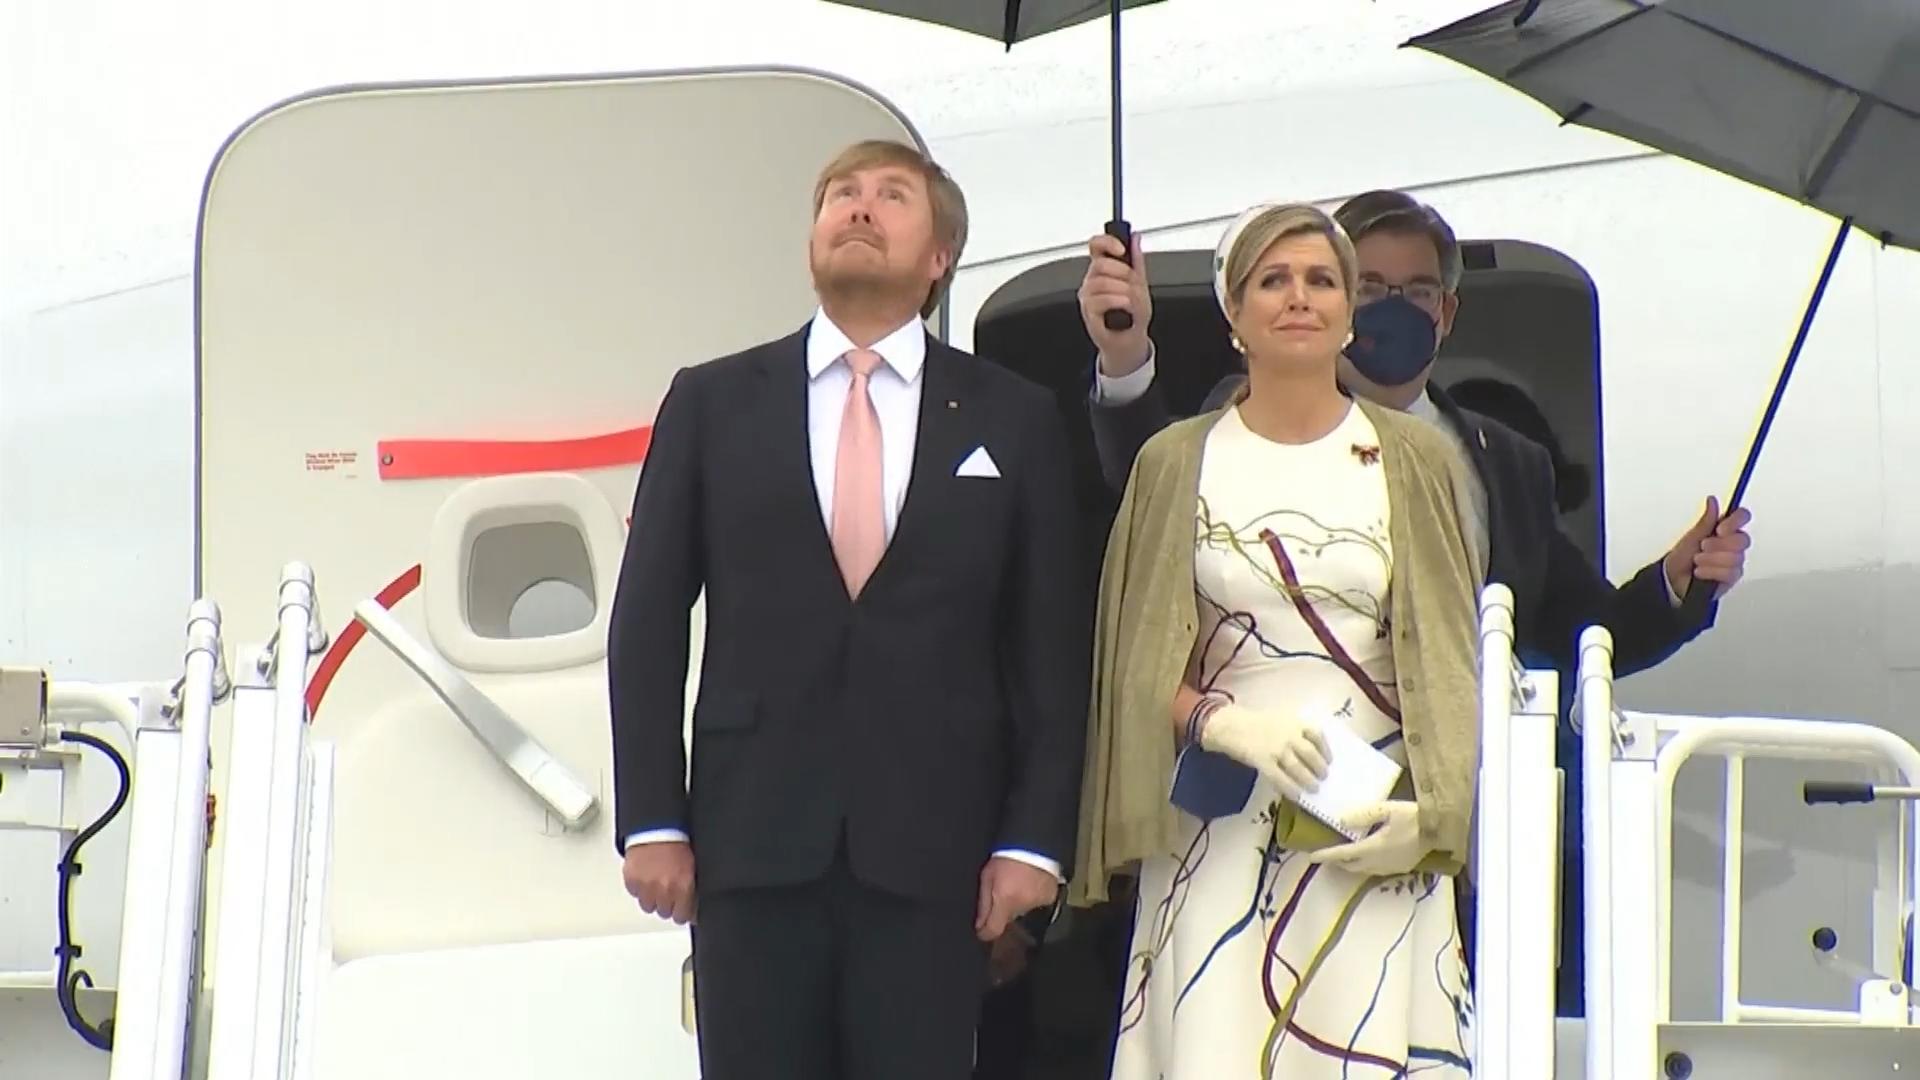 Willem-Alexander fliegt seine Máxima selbst nach Deutschland Das niederländische Königspaar zu Besuch bei uns